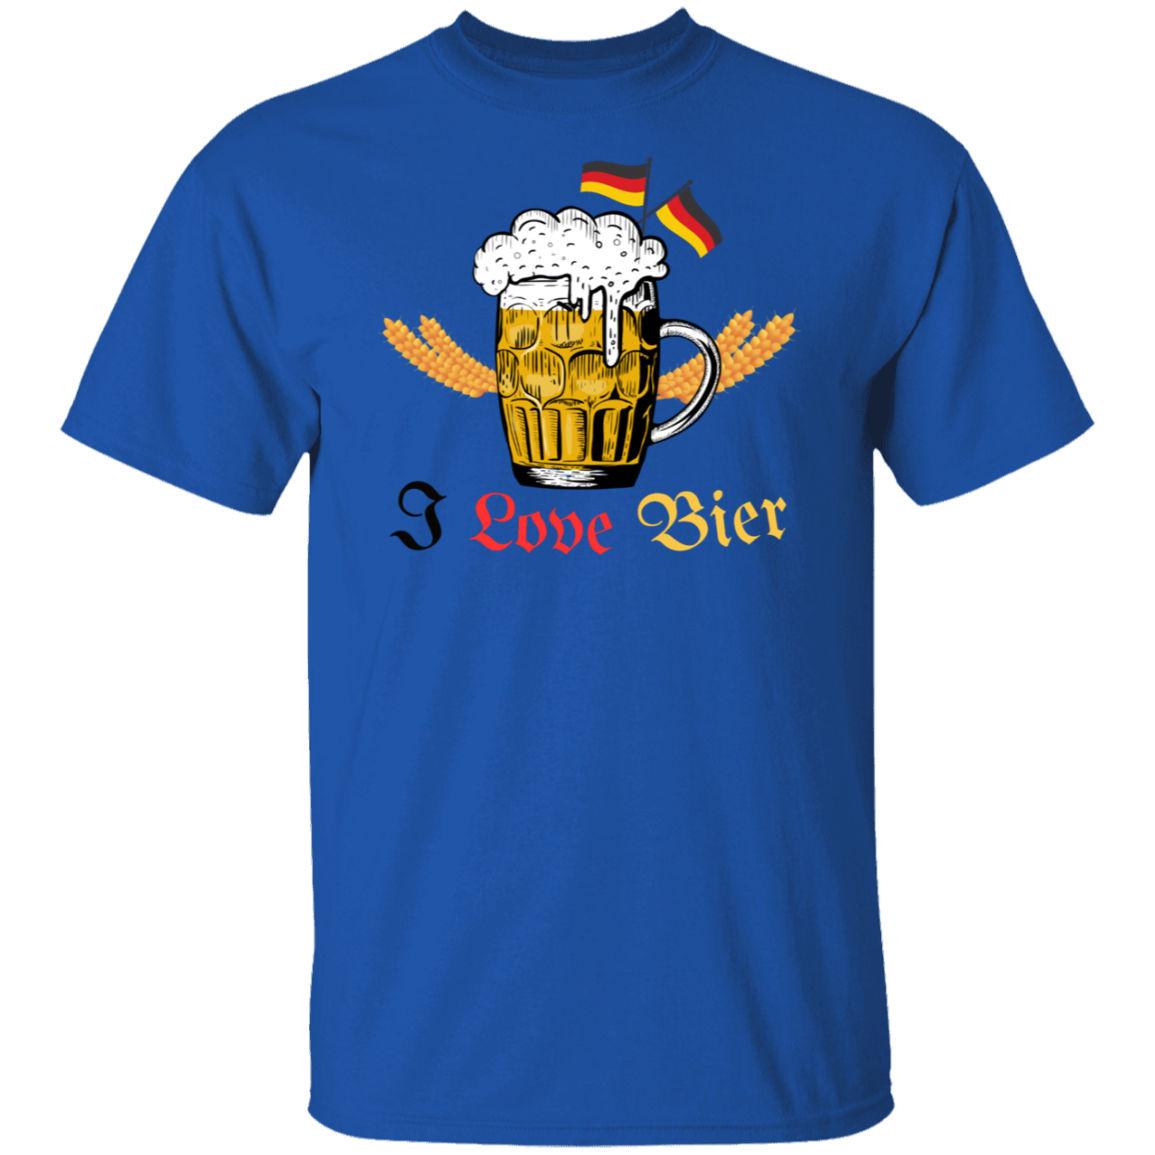 I Love Bier (Beer) - Men's T-Shirt